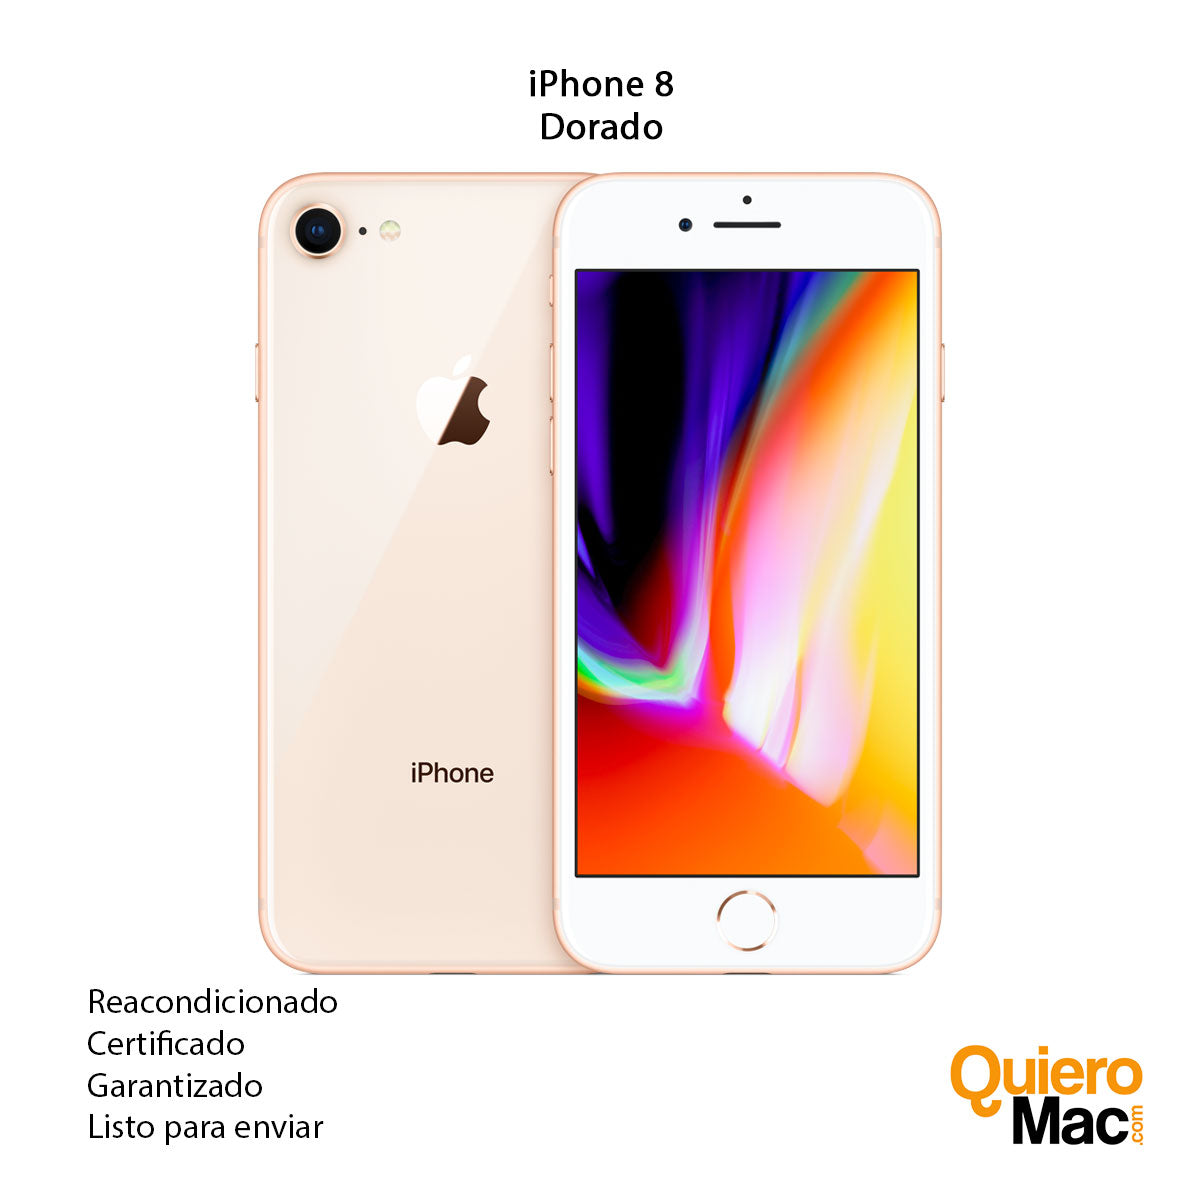 Apple iPhone 6S Rose Gold / Reacondicionado / 2+64GB / 4.7 HD+ 